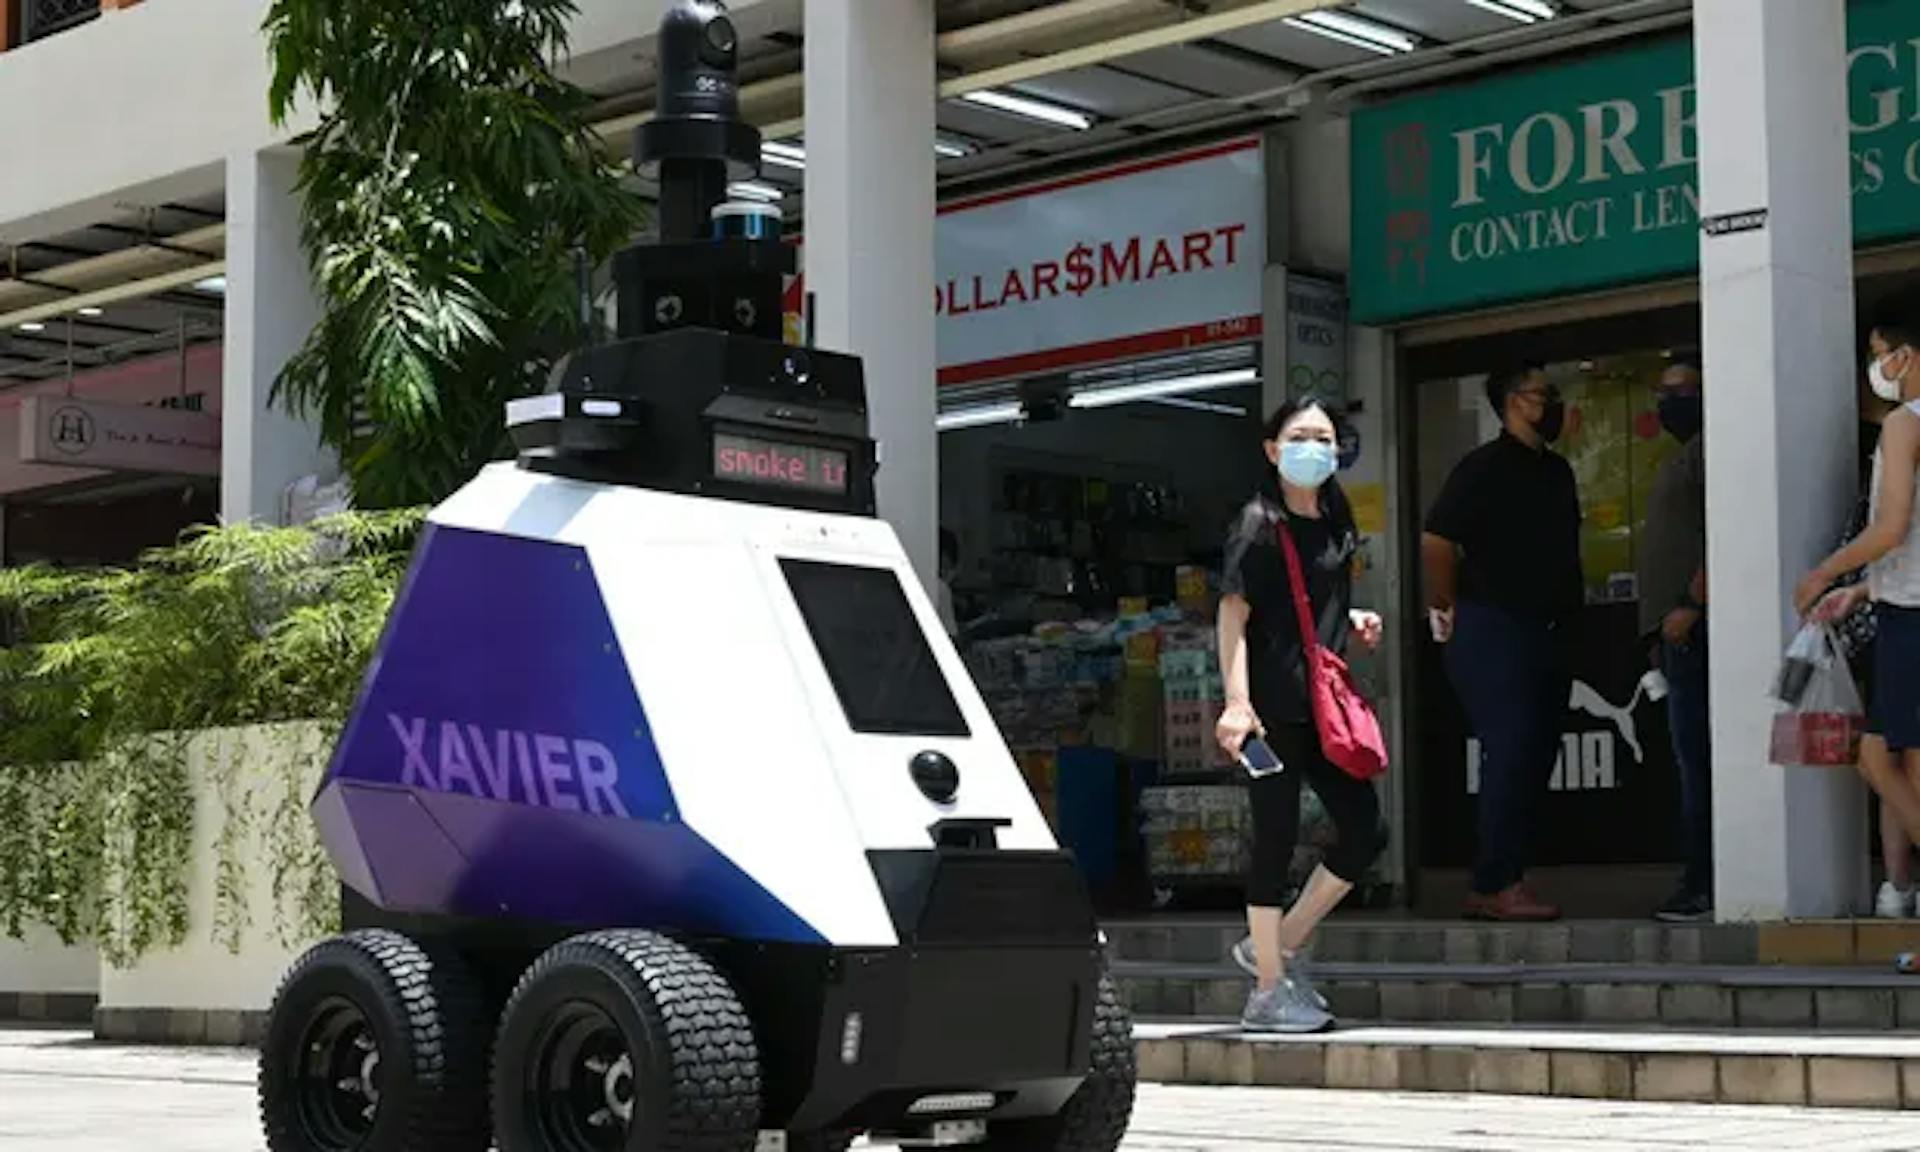 "Xavier" autónomo, desarrollado por la Agencia de Ciencia y Tecnología del Equipo Local (HTX) en su prueba de 3 semanas en Singapur. // El guardián